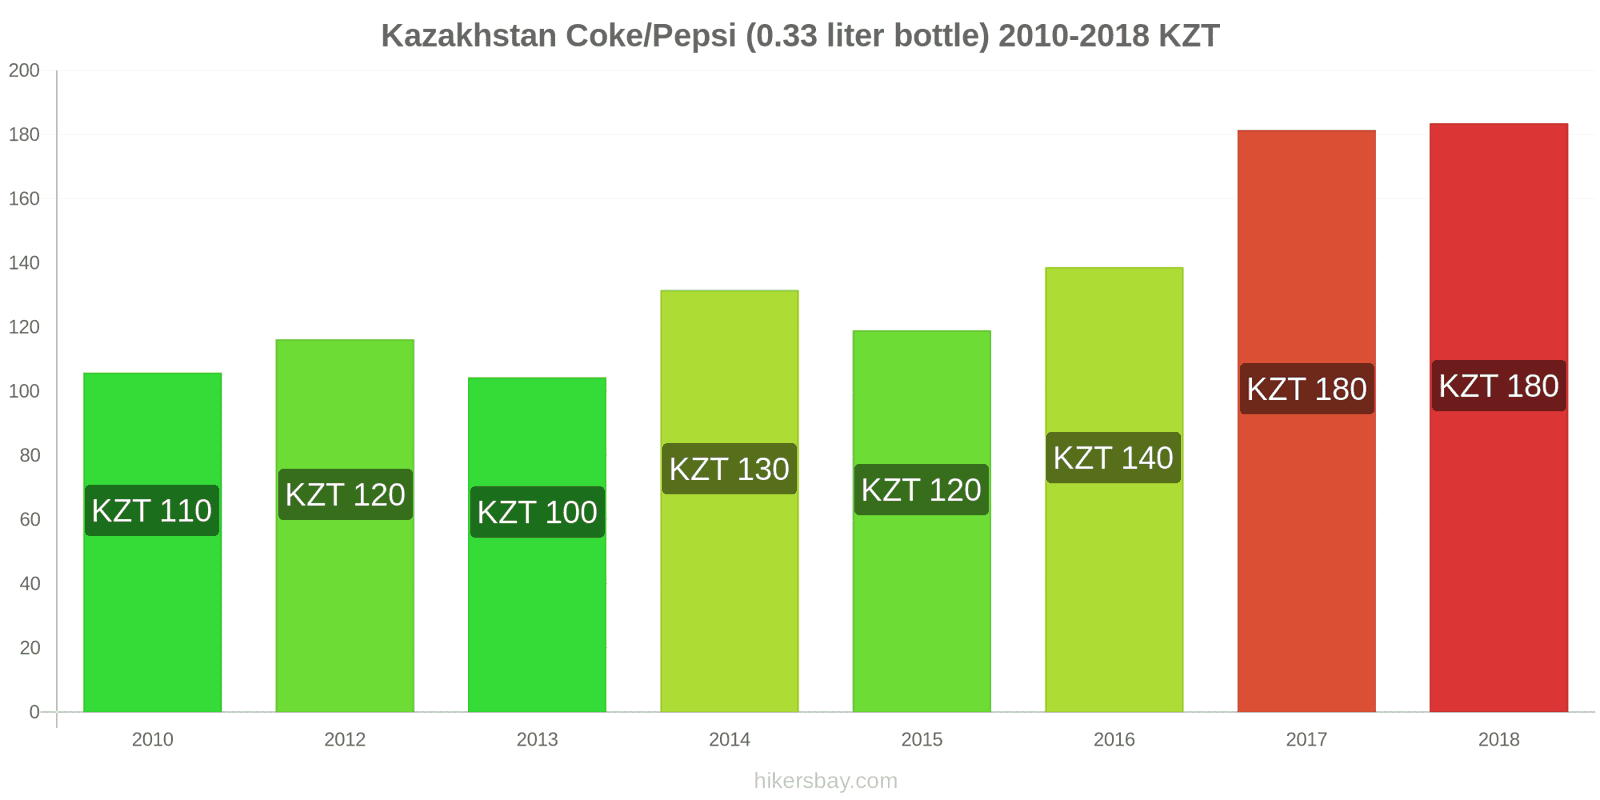 Kazakhstan price changes Coke/Pepsi (0.33 liter bottle) hikersbay.com